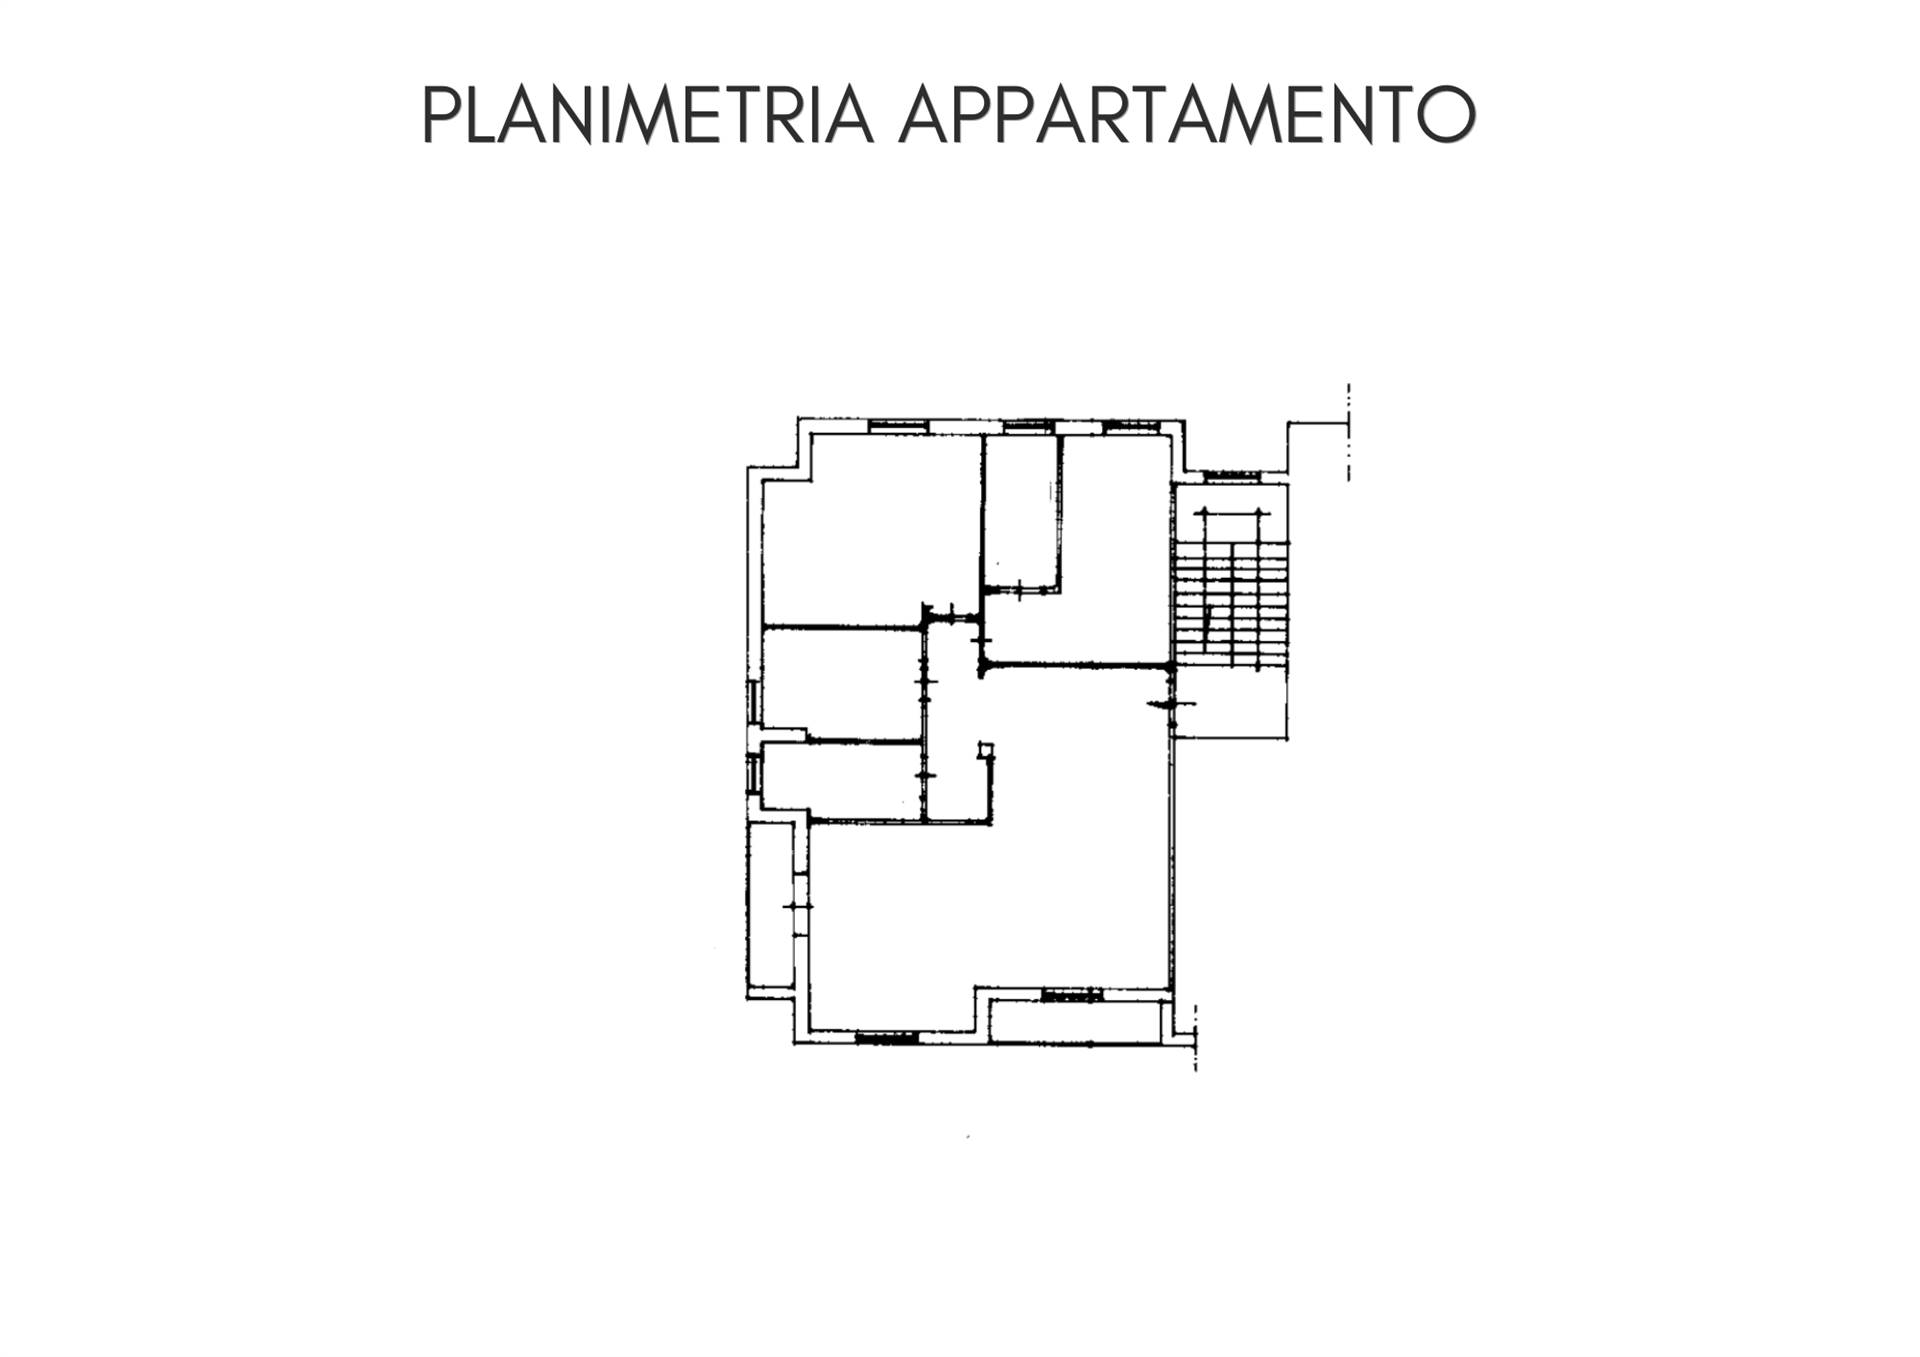 Appartamento a Lerici con 4 locali di 113 m2 - PLANIMETRIA